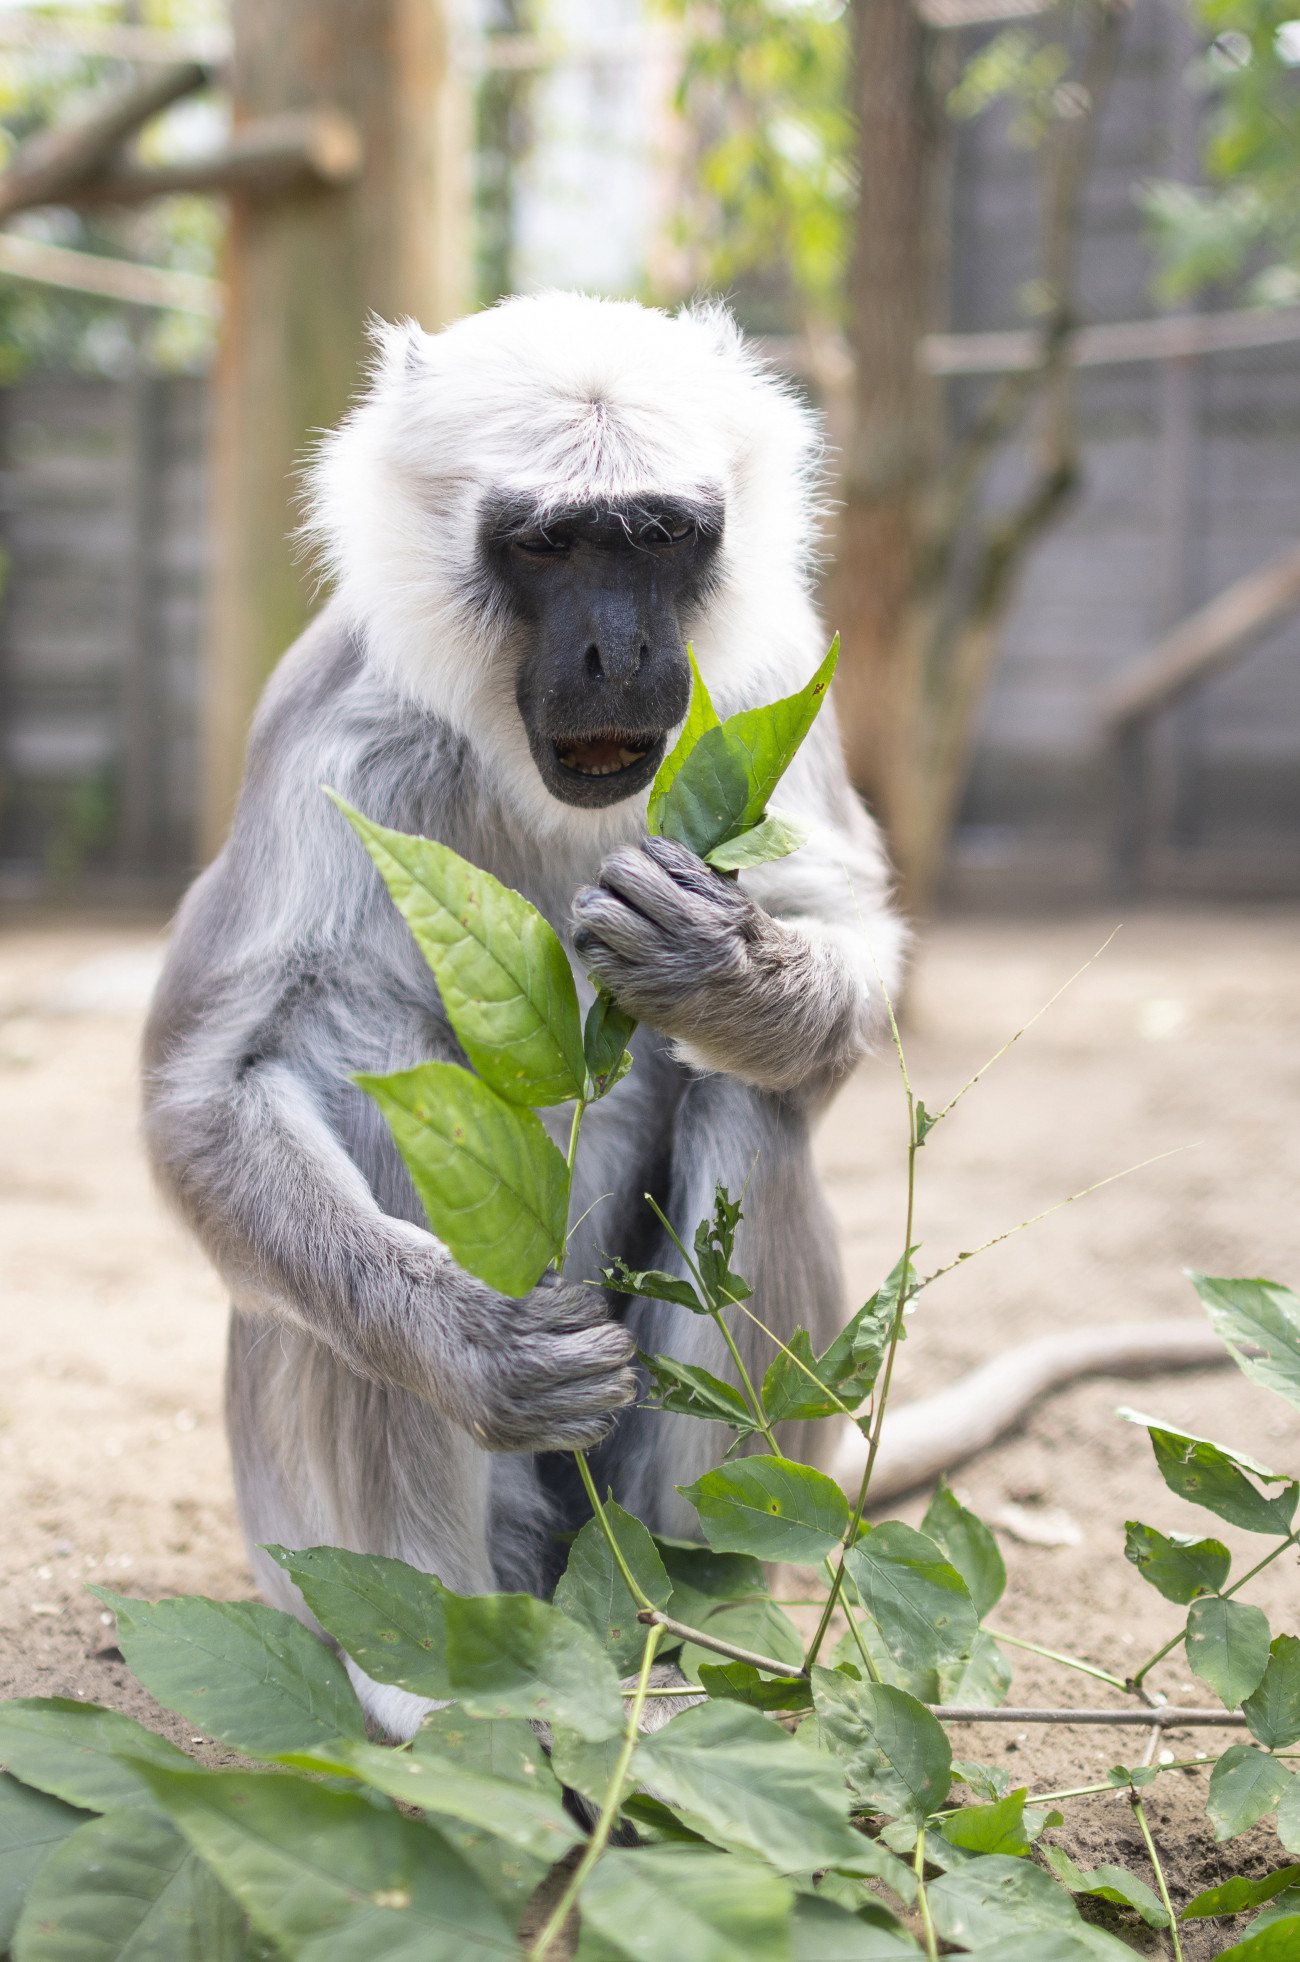 Nyíregyháza, 2019. augusztus 12.
A hannoveri Erlebnis Zoóból érkezett ötéves nőstény hulmán (Semnopithecus entellus) a Nyíregyházi Állatparkban 2019. augusztus 12-én. A hulmánok zárt tartási körülmények között ritkaságnak számítanak, hiszen állatkertekben az egész világon 183 egyed él ebből a közepes termetű majomfajból, Nyíregyházán - a most érkezett állattal - három. 
MTI/Balázs Attila